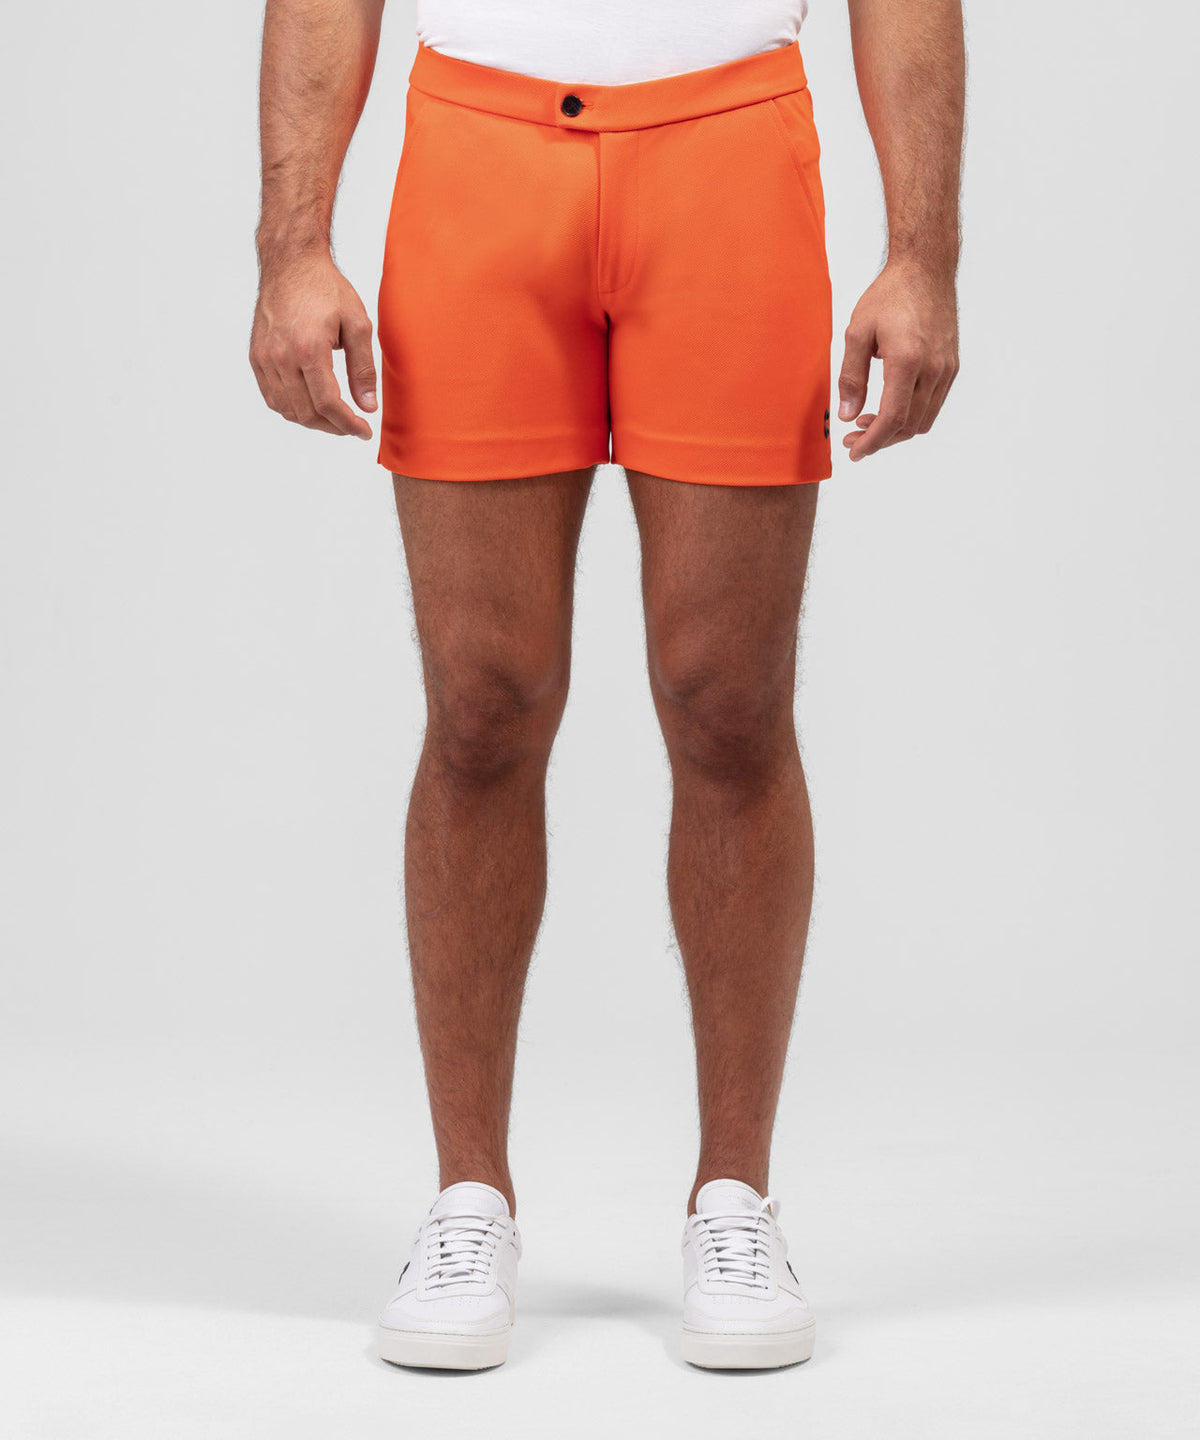 Tennis Shorts: Spritz Orange